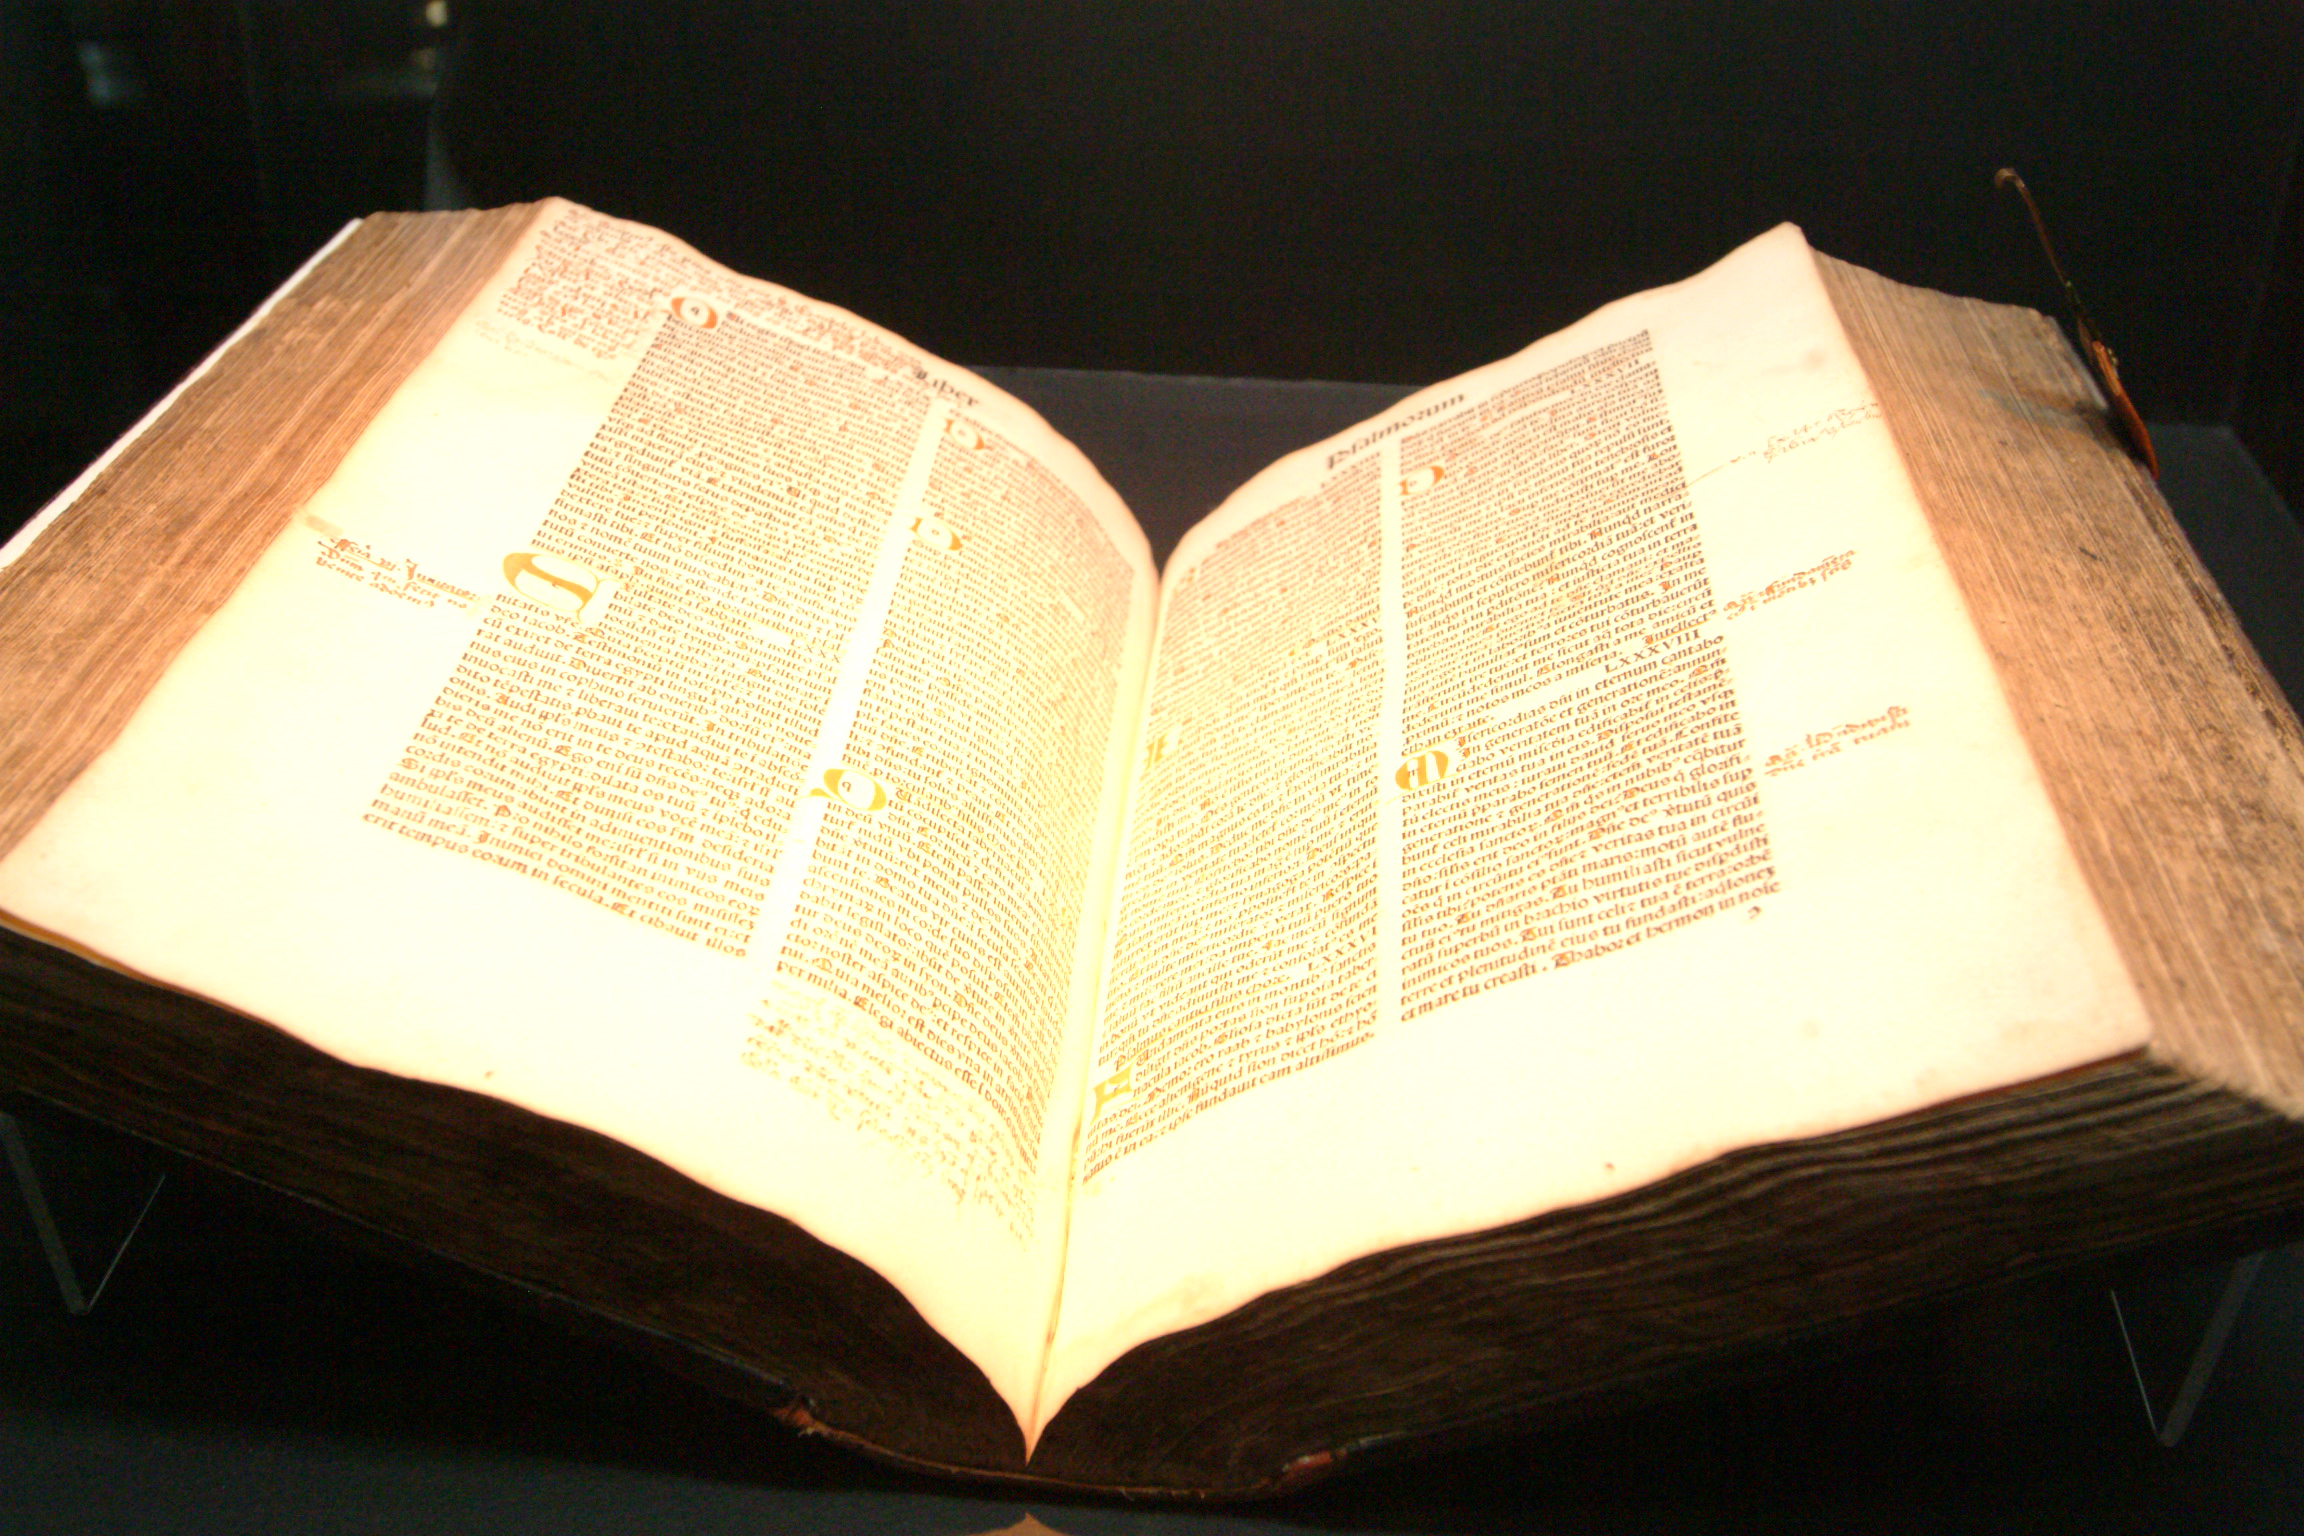 Bpiblia impressa em Noruegus, em 1493<a style='float:right;color:#ccc' href='https://www3.al.sp.gov.br/repositorio/noticia/hist/Biblia impressa em Nurembergue 1493.jpg' target=_blank><i class='bi bi-zoom-in'></i> Clique para ver a imagem </a>